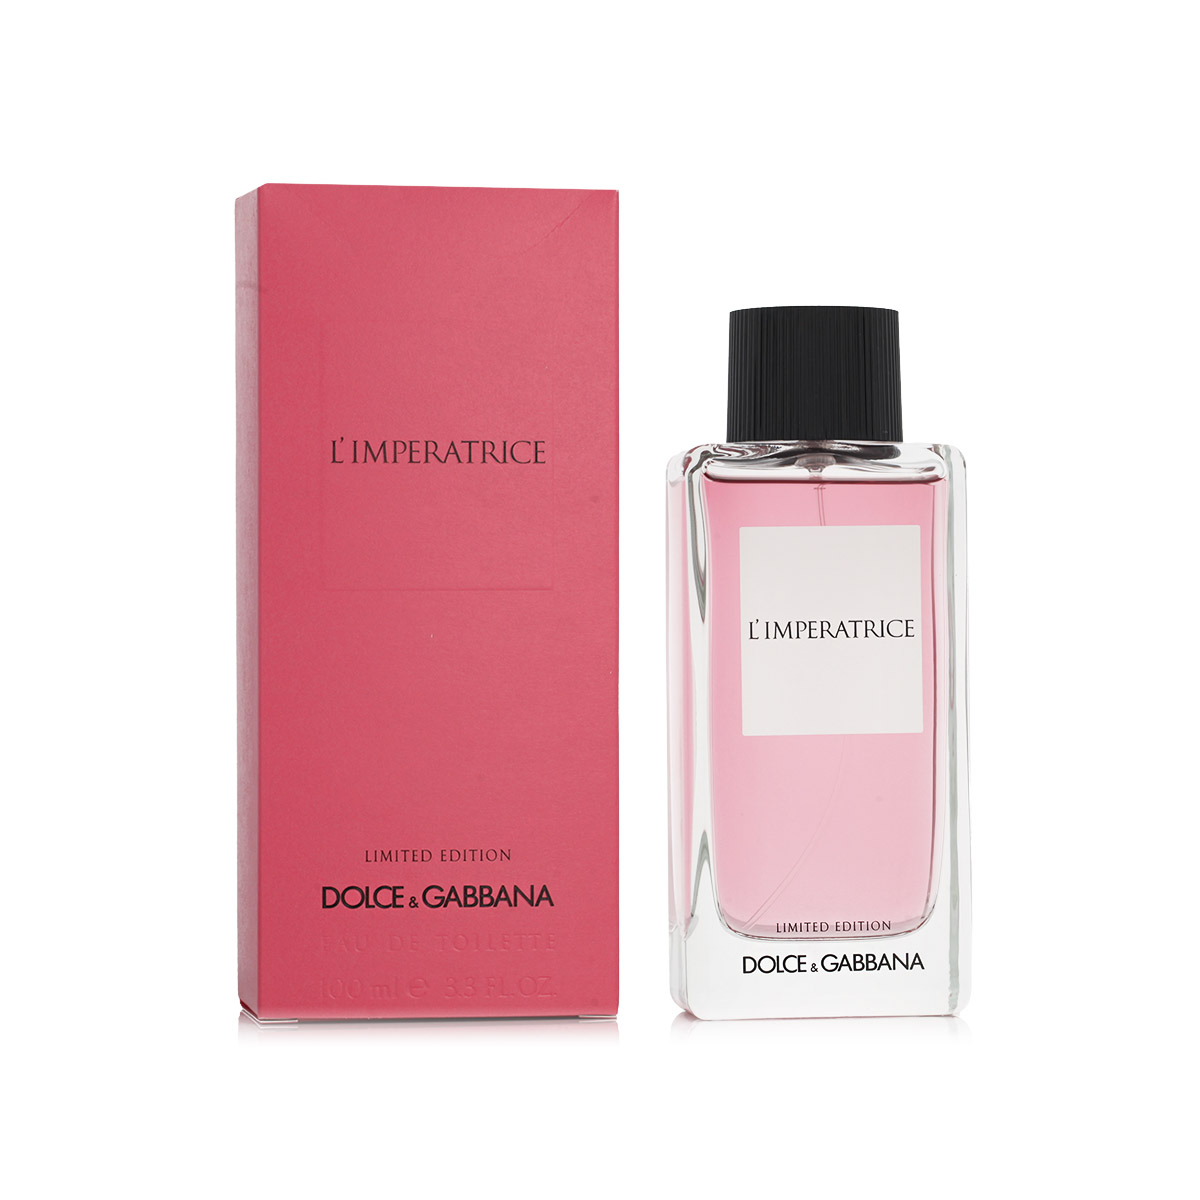 Dolce & Gabbana L'Imperatrice Limited Edition 5 ml kvepalų mėginukas (atomaizeris) Moterims EDT